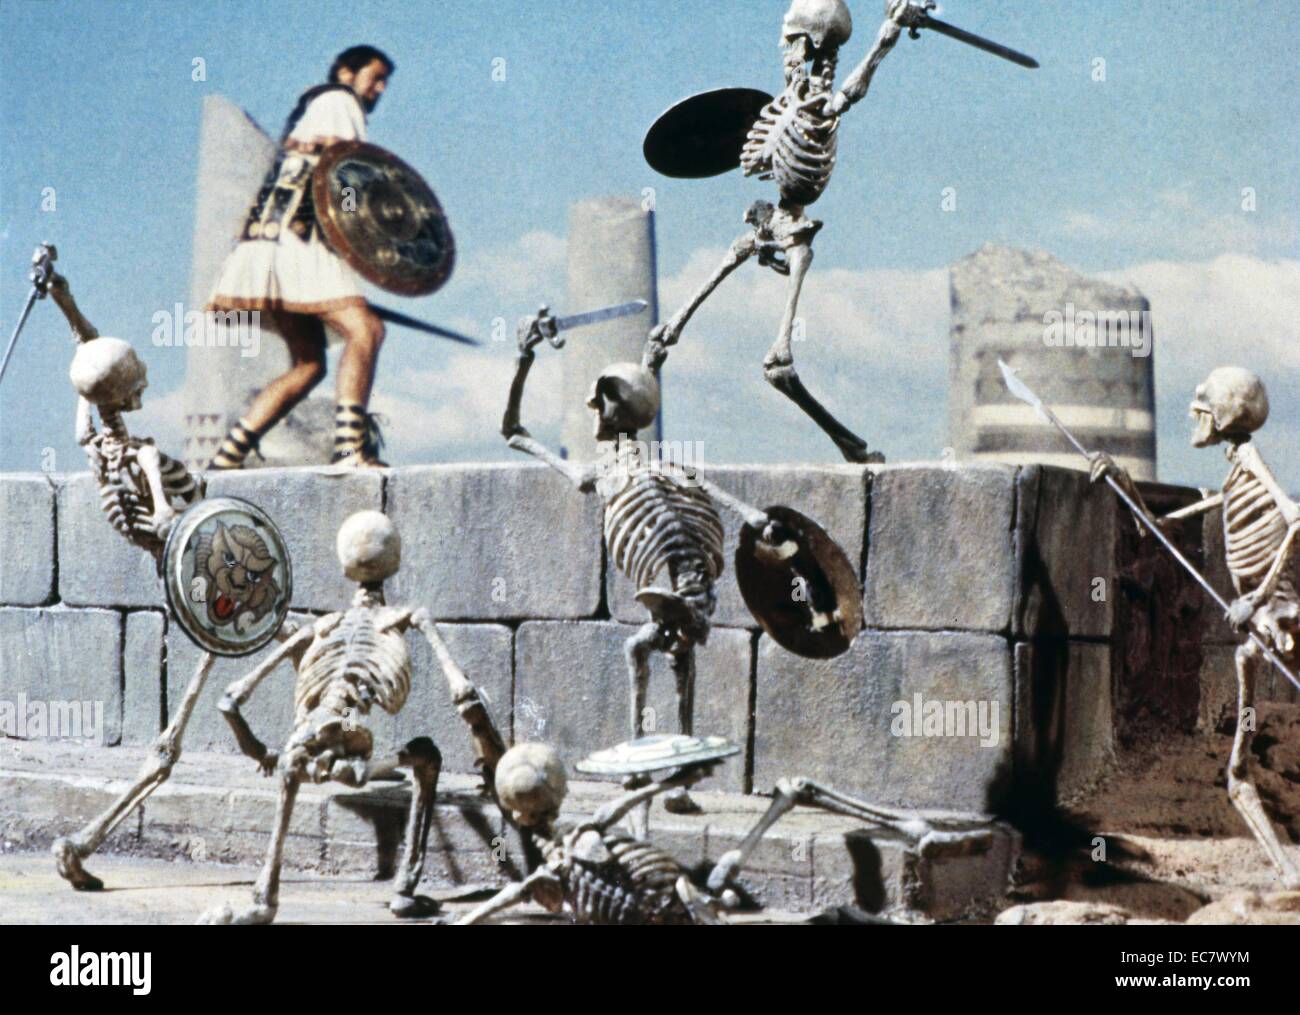 Jason et les Argonautes est un 1963 Columbia Pictures fantasy Mythologie grecque film avec Todd Armstrong comme le héros grec dans une histoire au sujet de sa quête de la Toison d'or. Banque D'Images